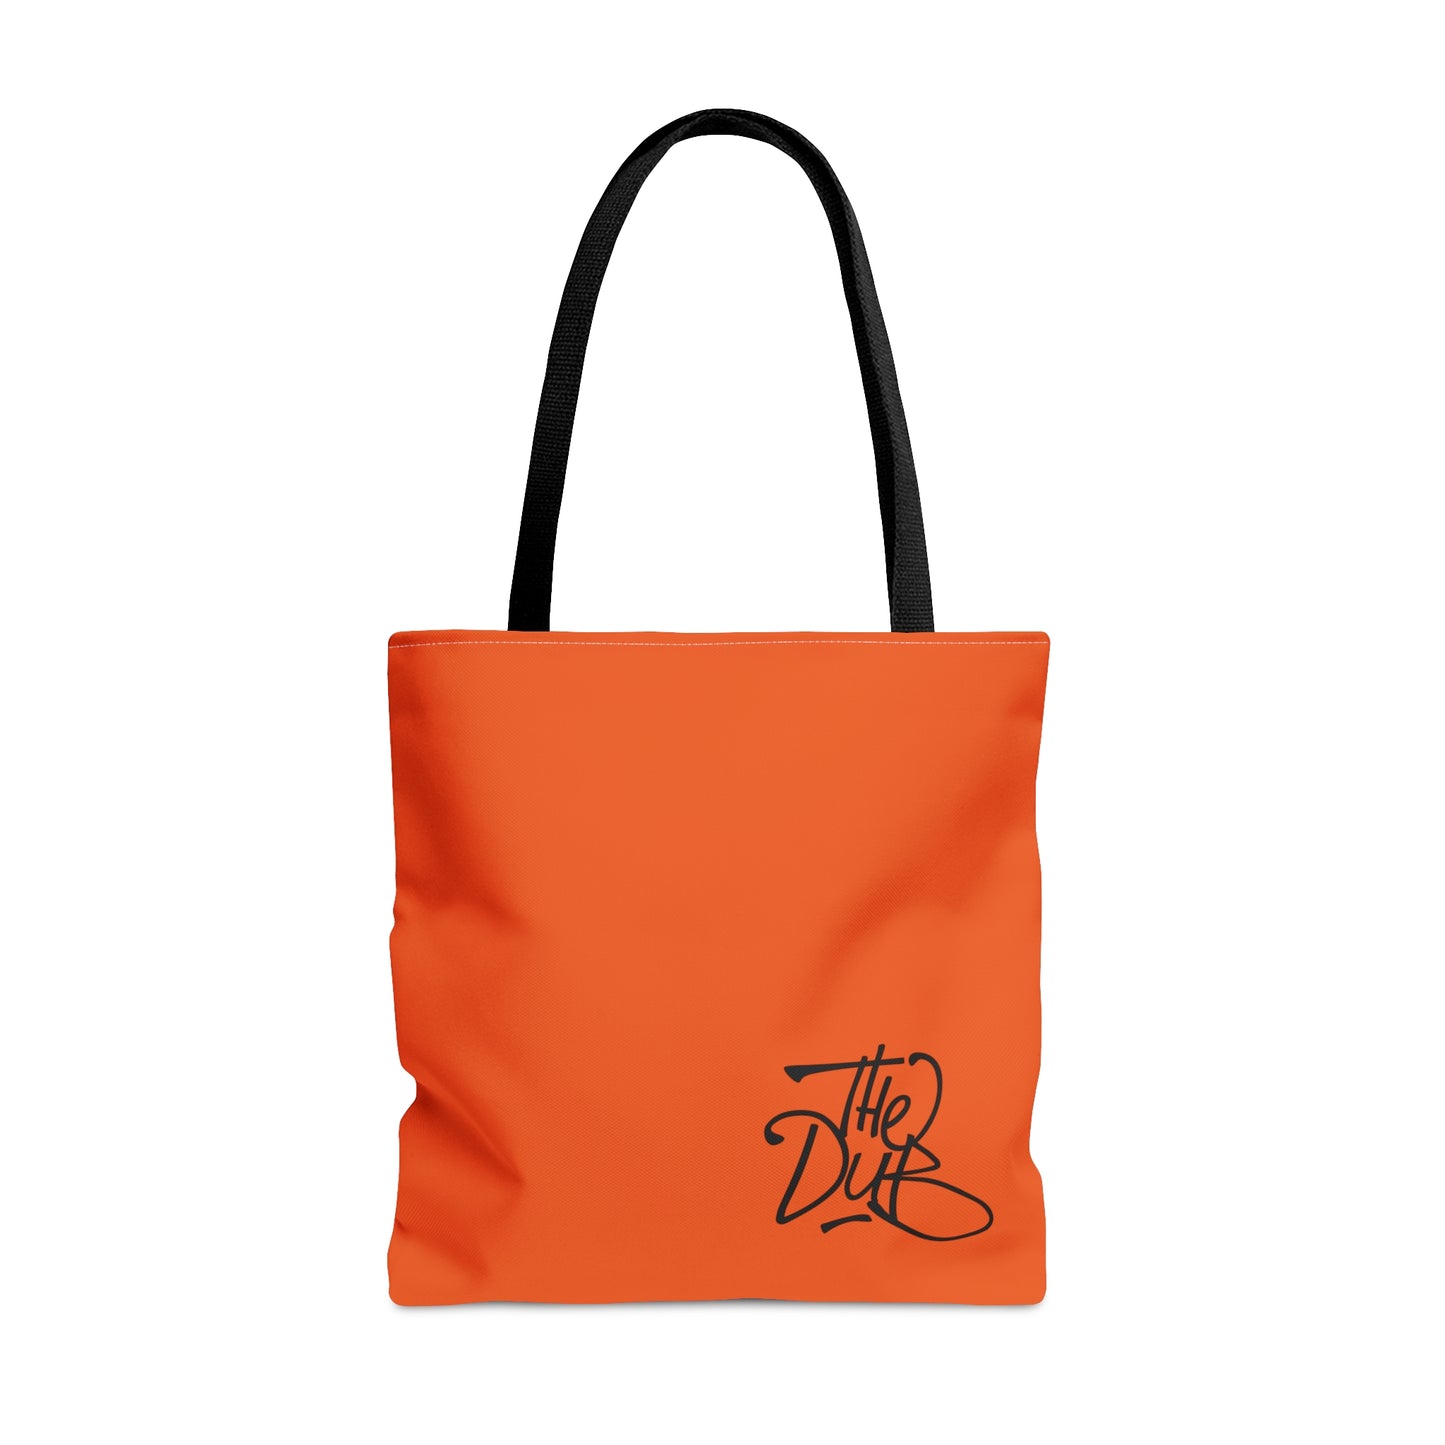 DubPDXGear - Orange DubSac Tote Bag